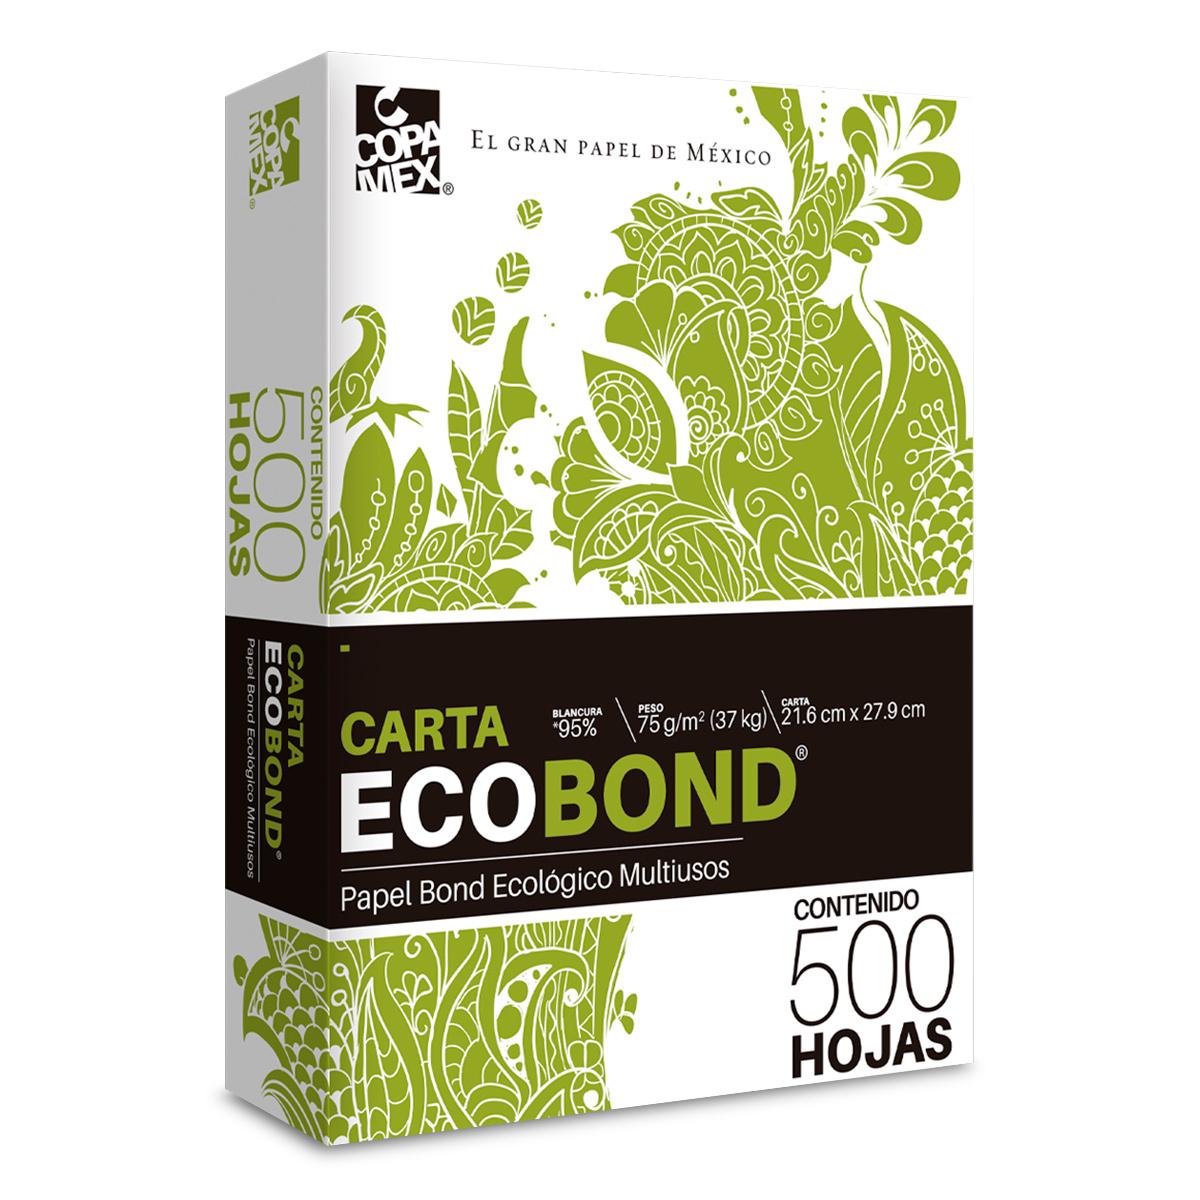 Papel Bond Ecológico Carta Copamex Eco Bond Paquete 500 hojas blancas | Office Mexico